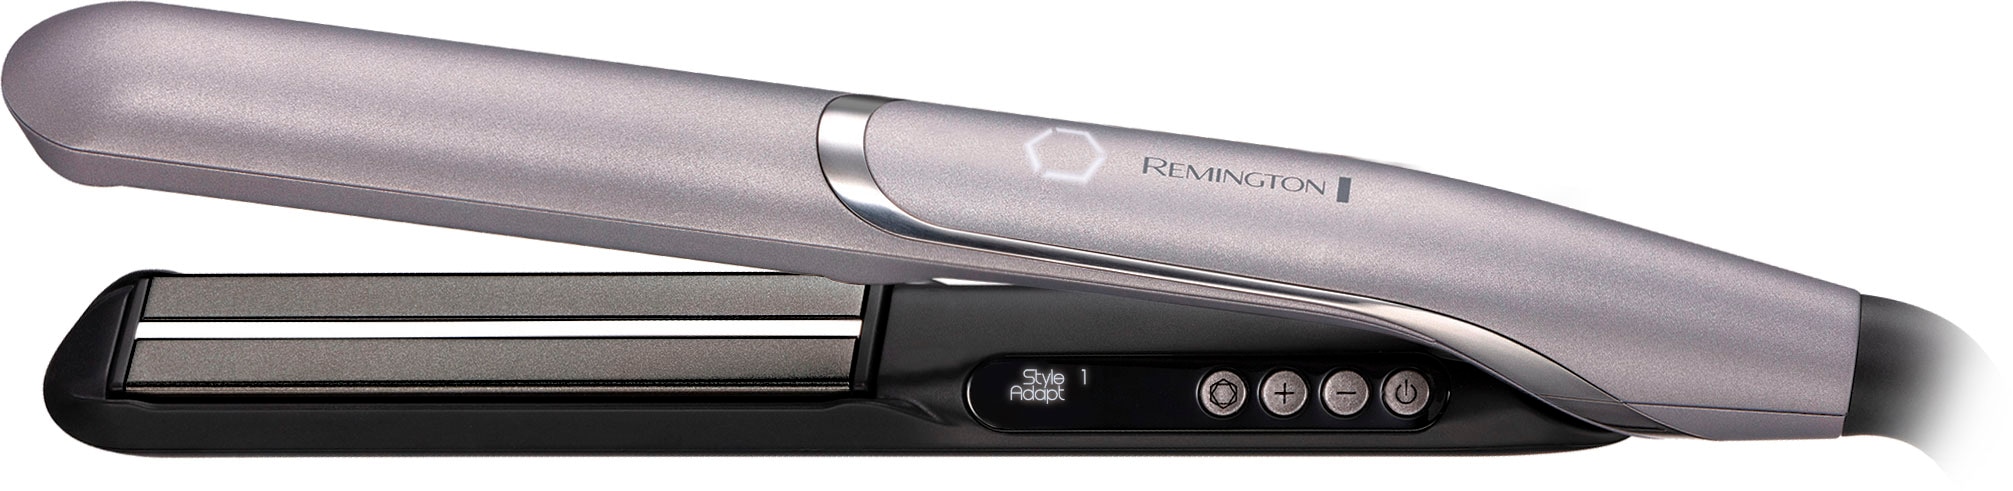 Remington Glätteisen »PROluxe You™ S9880«, Keramik-Beschichtung, 2 Nutzerprofile bestellen StyleAdapt™ Funktion, Haarglätter, Memory lernfähiger